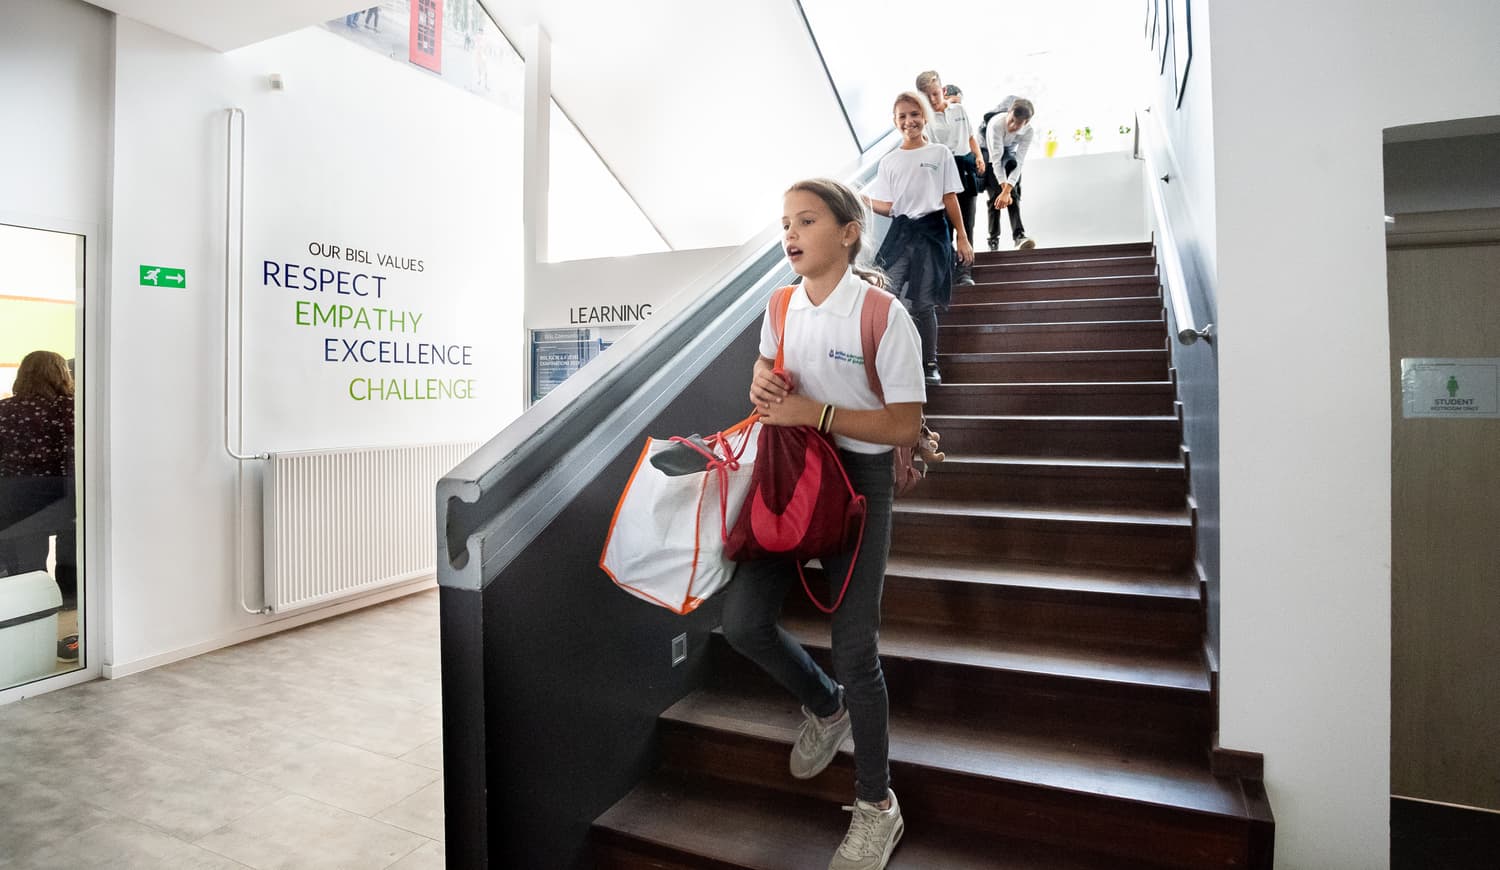 Učenci v šoli hodijo po stopnicah